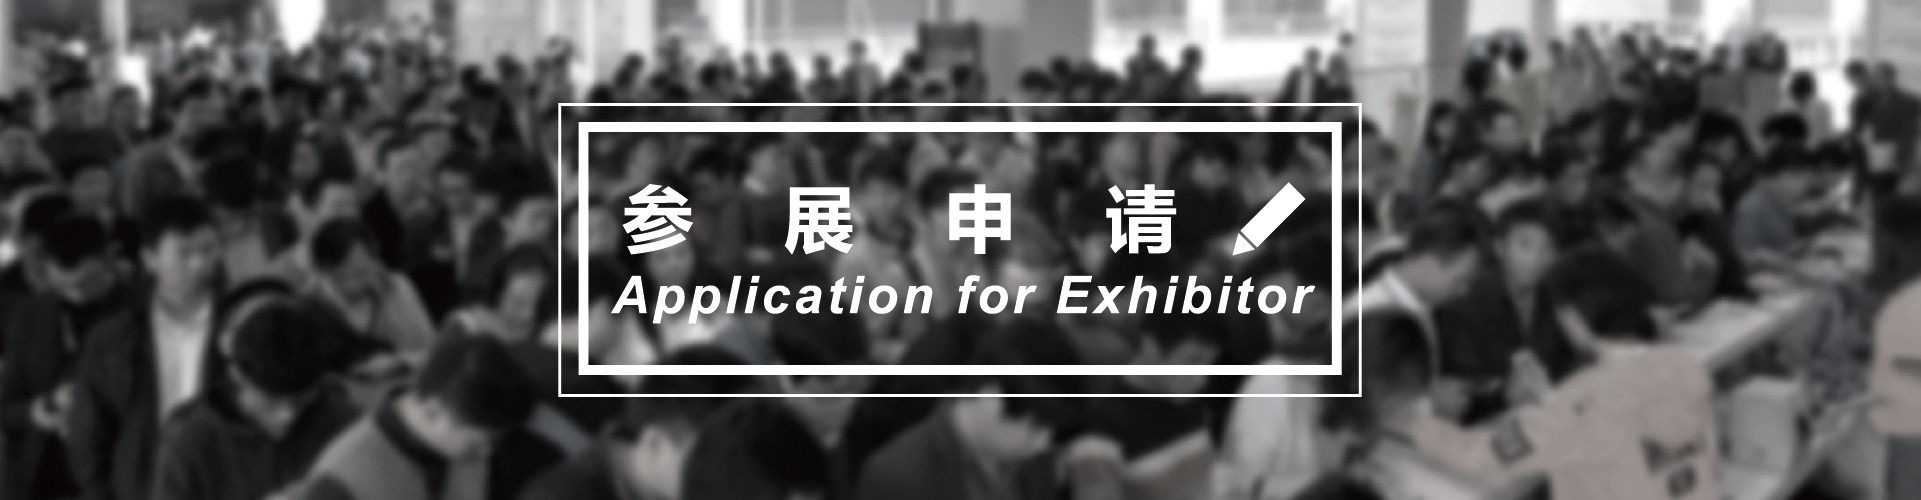 亚洲2020上海国际包装工业展览会